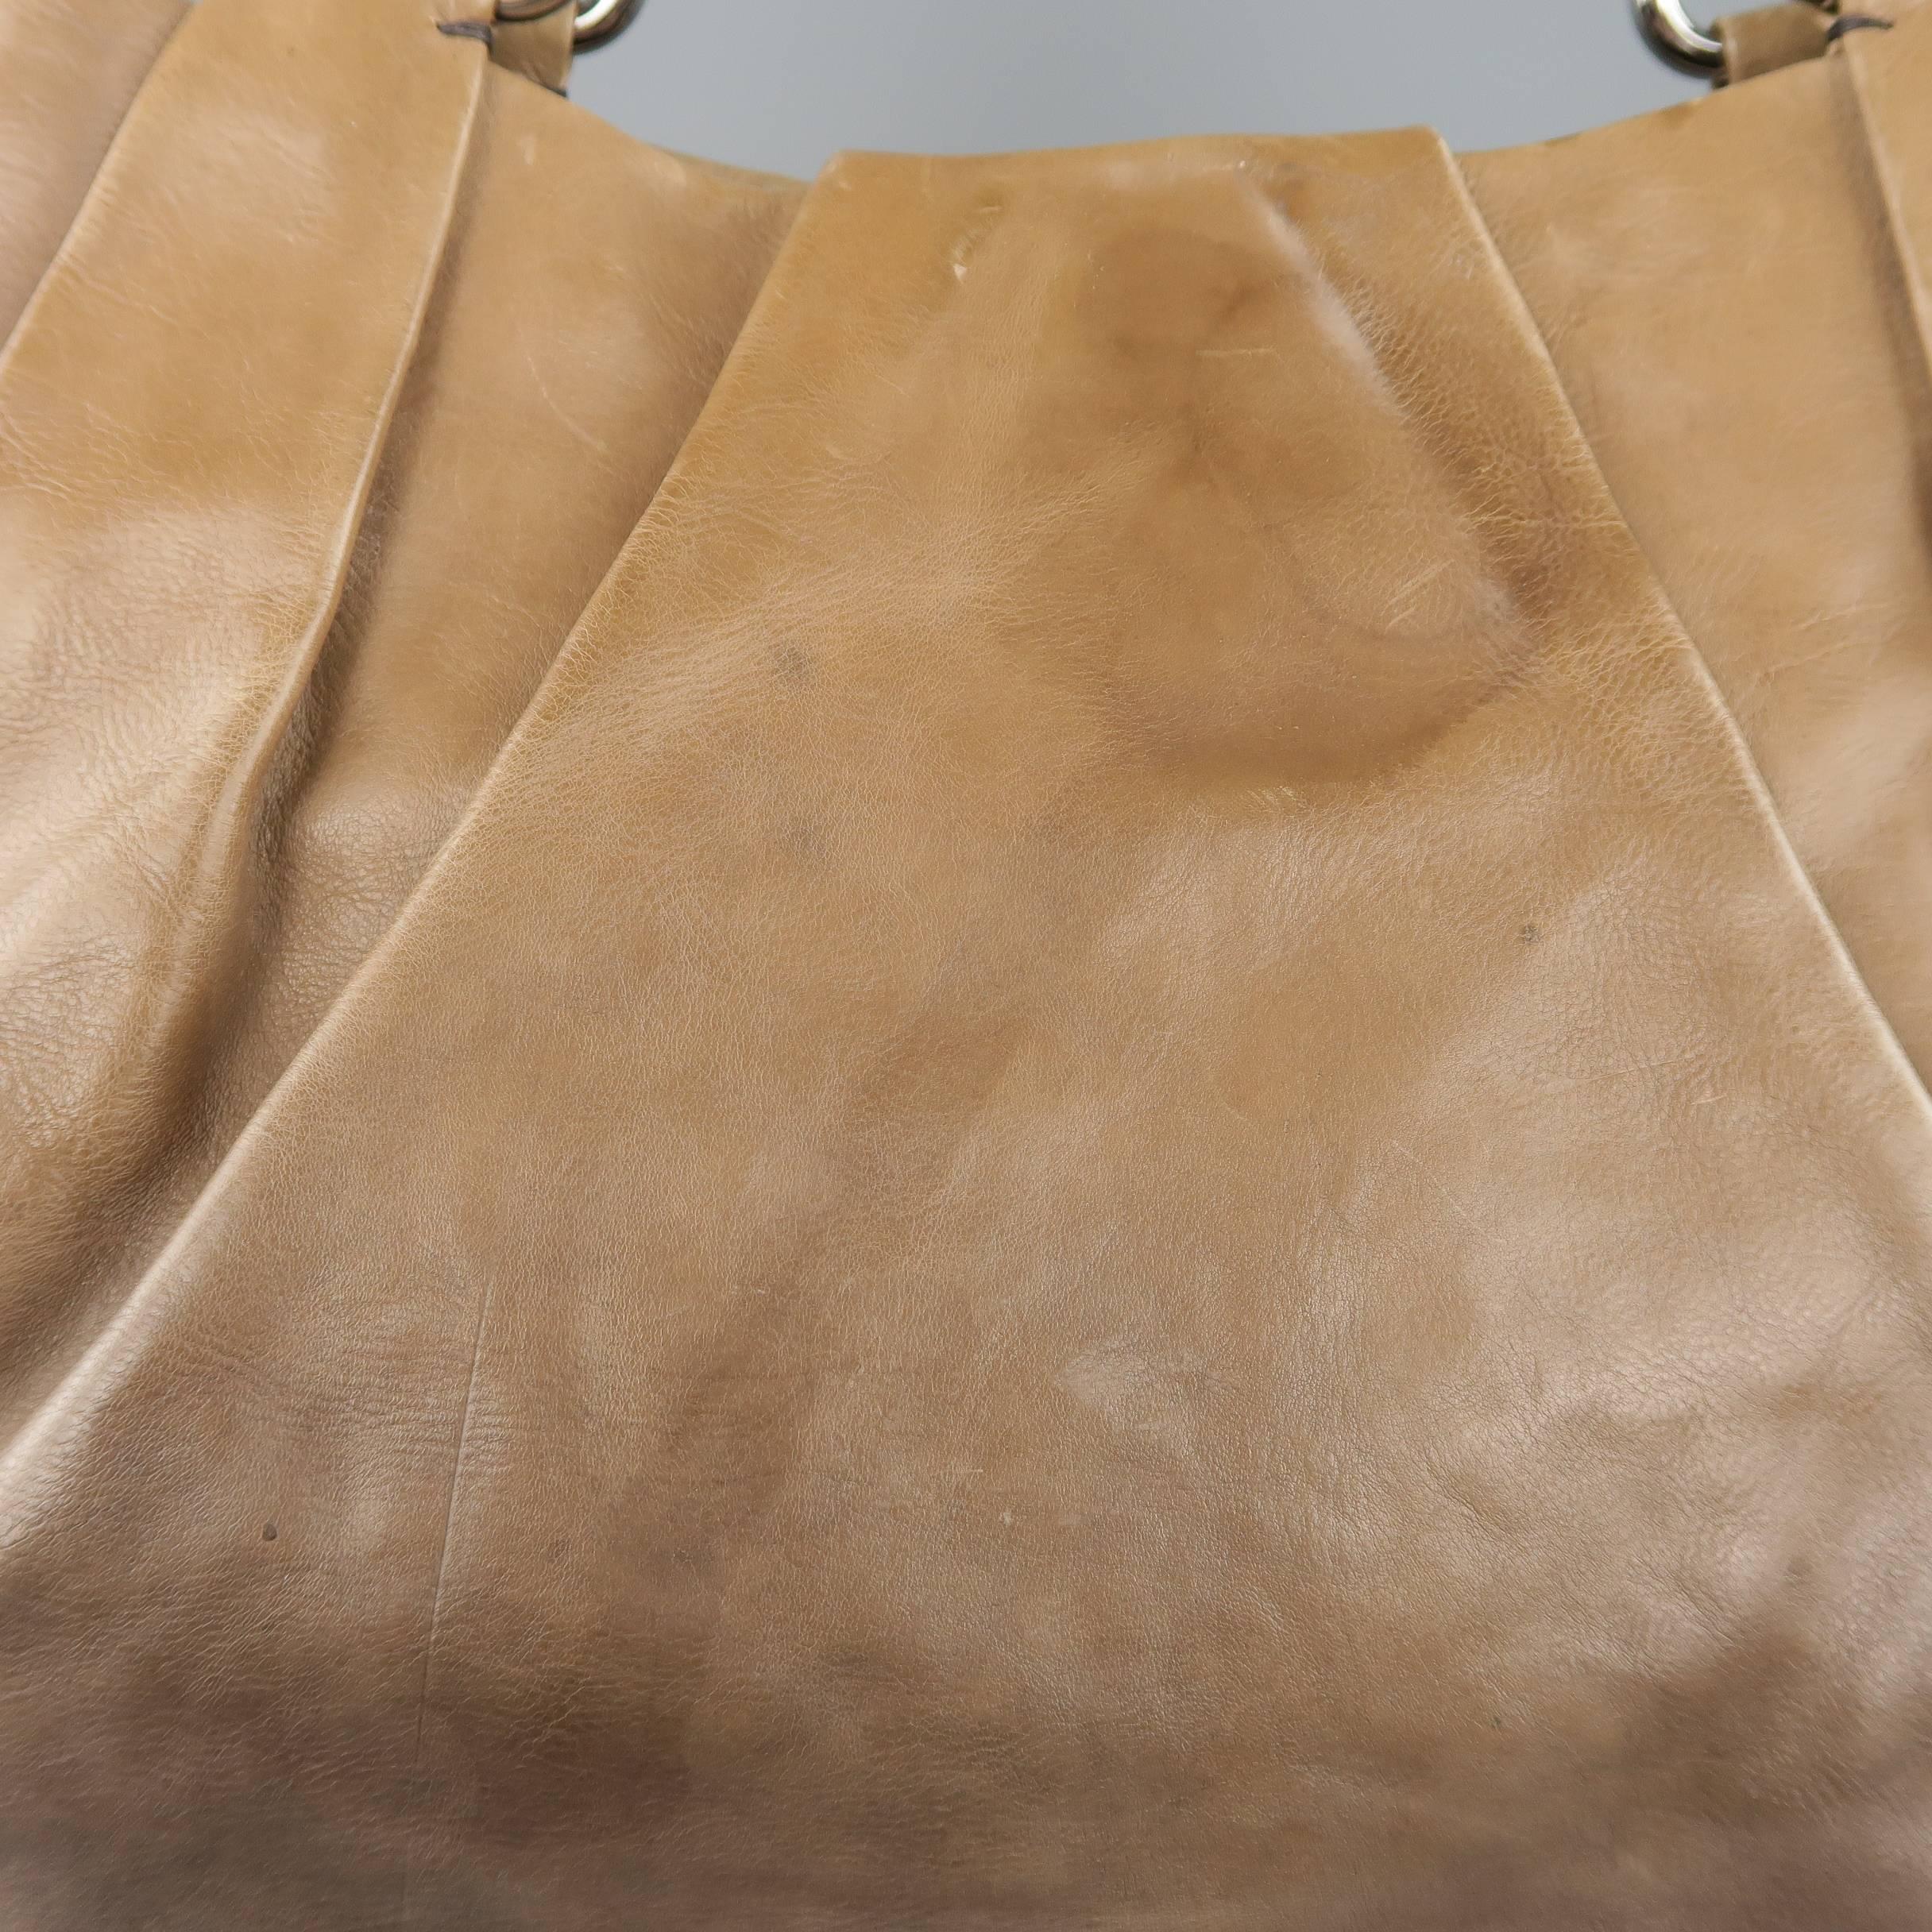 PRADA Taupe Ombre Leather Degrade Blond Mordor Glace Handbag 4